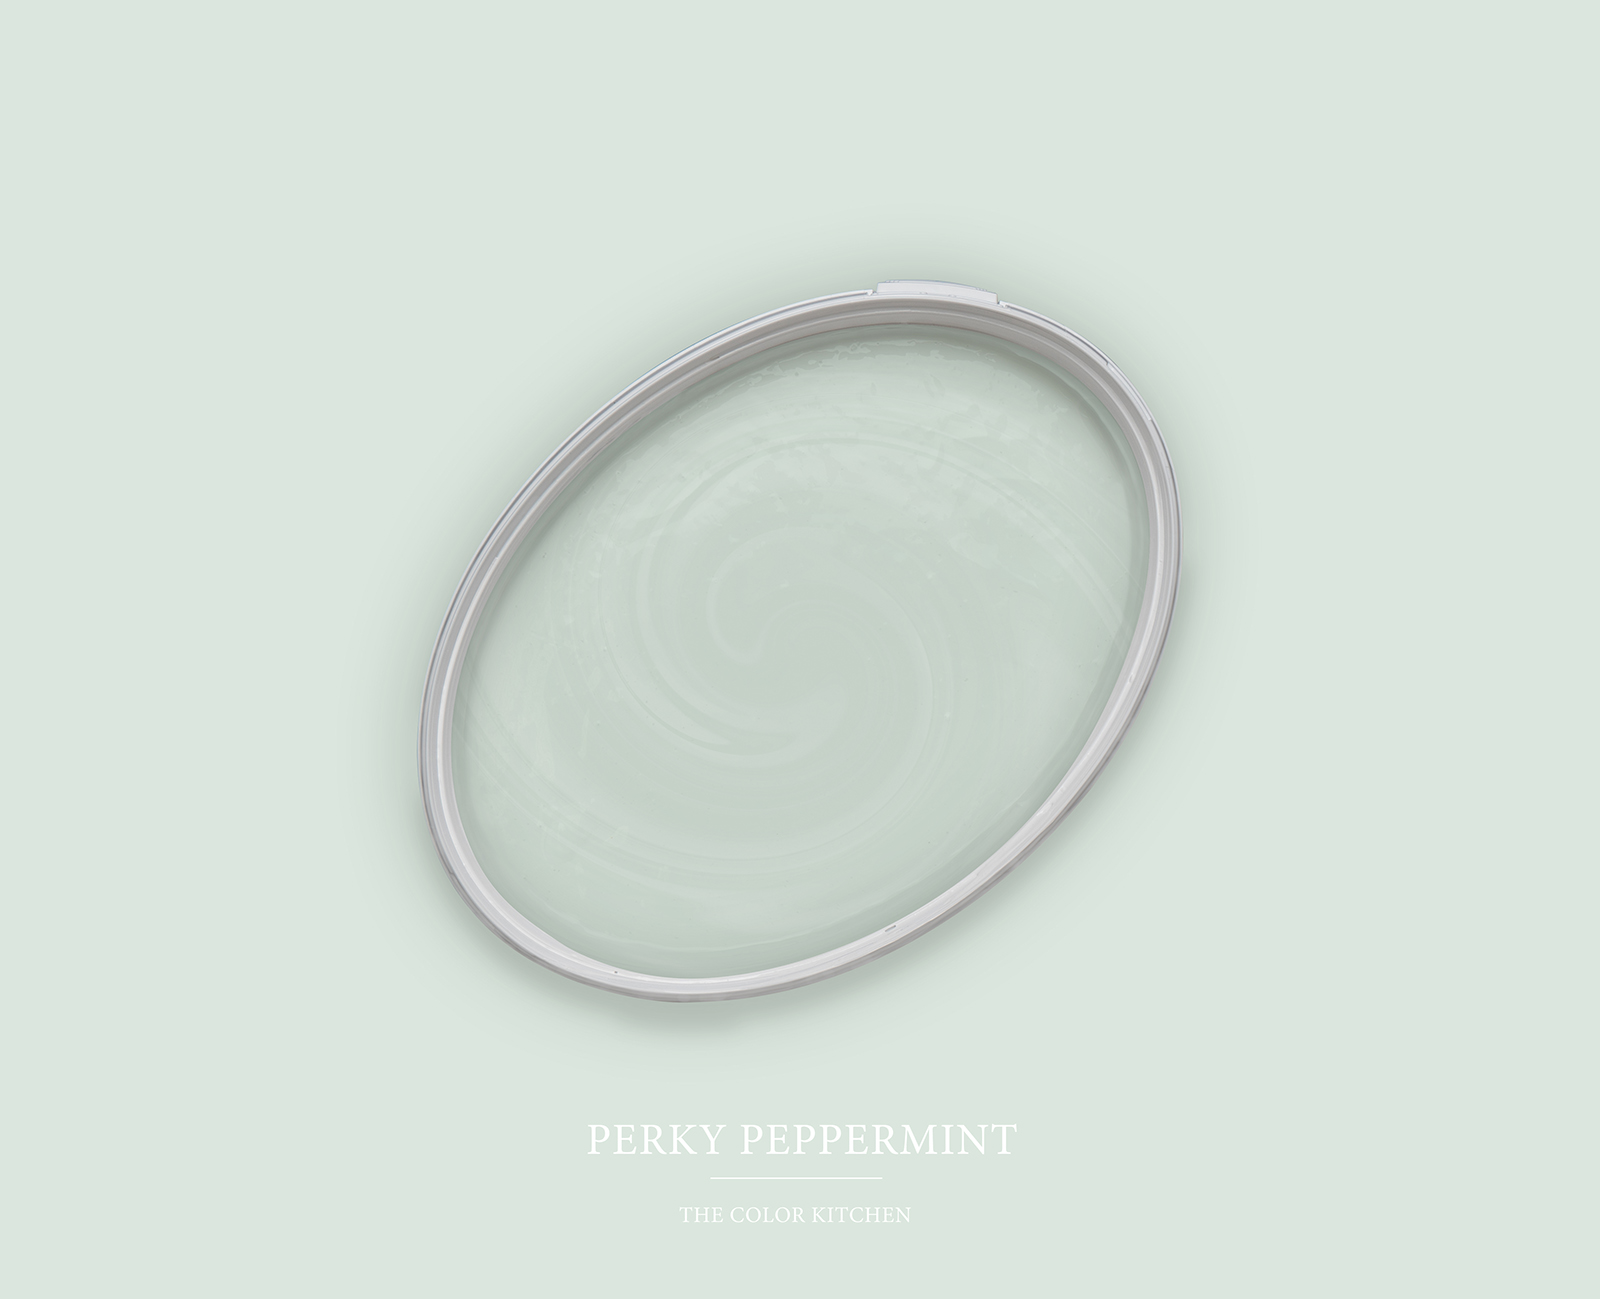         Wall Paint TCK3000 »Perky Peppermint« in a light mint shade – 2.5 litre
    